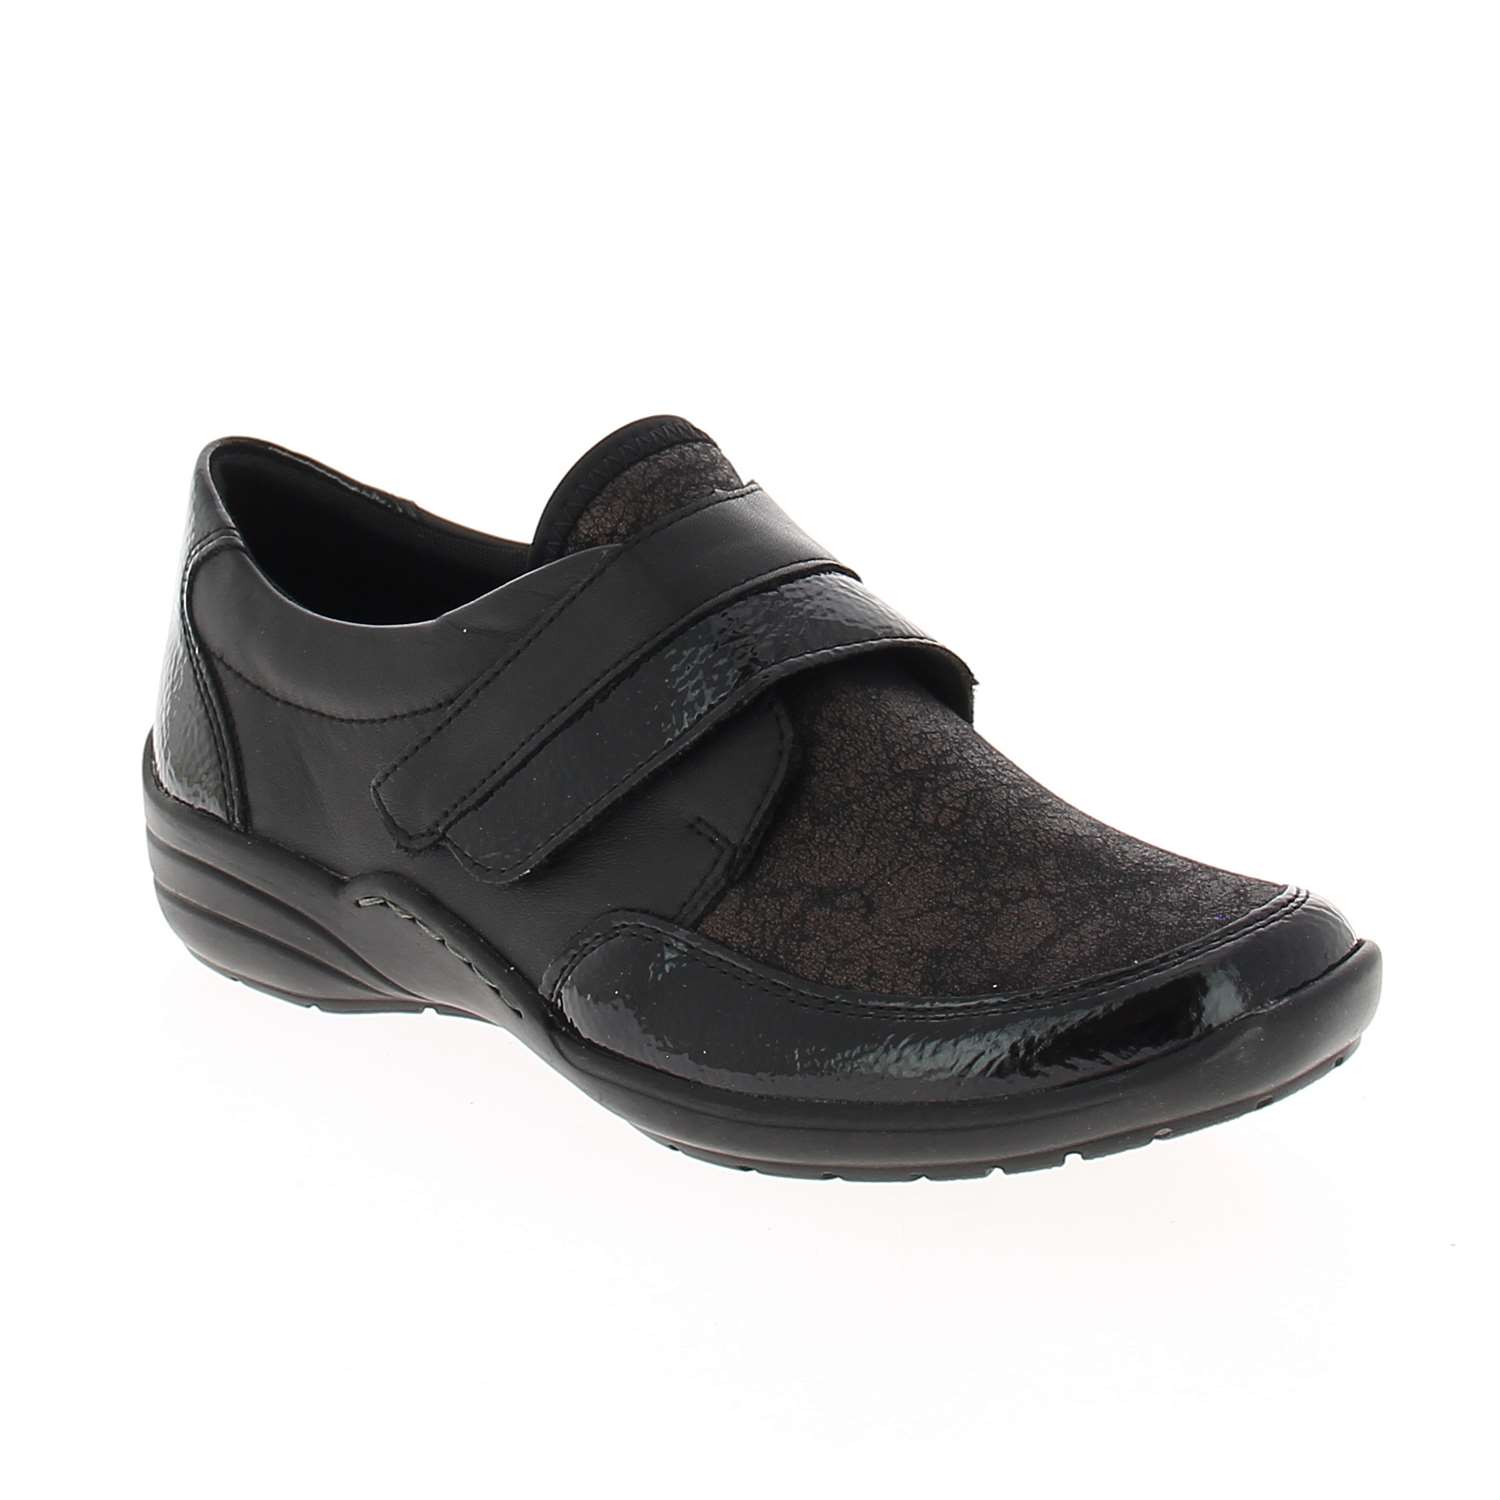 01 - RELIO - REMONTE - Chaussures à lacets - Textile